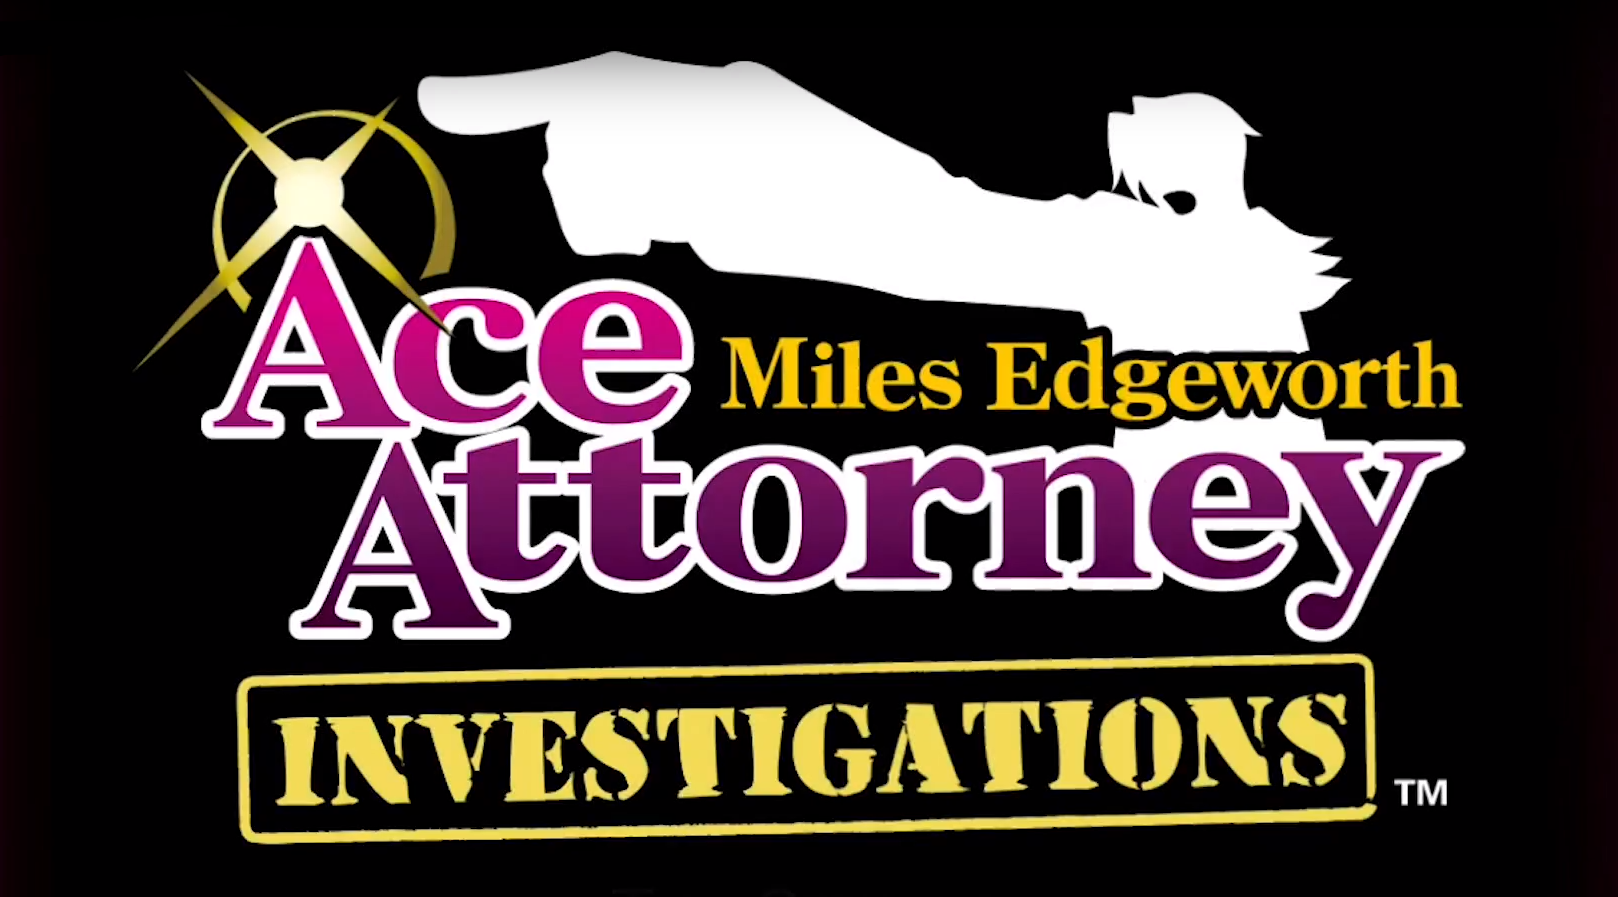 Miles edgeworth investigations. Miles Edgeworth investigations logo. Ace attorney investigations logo. Ace attorney logo.